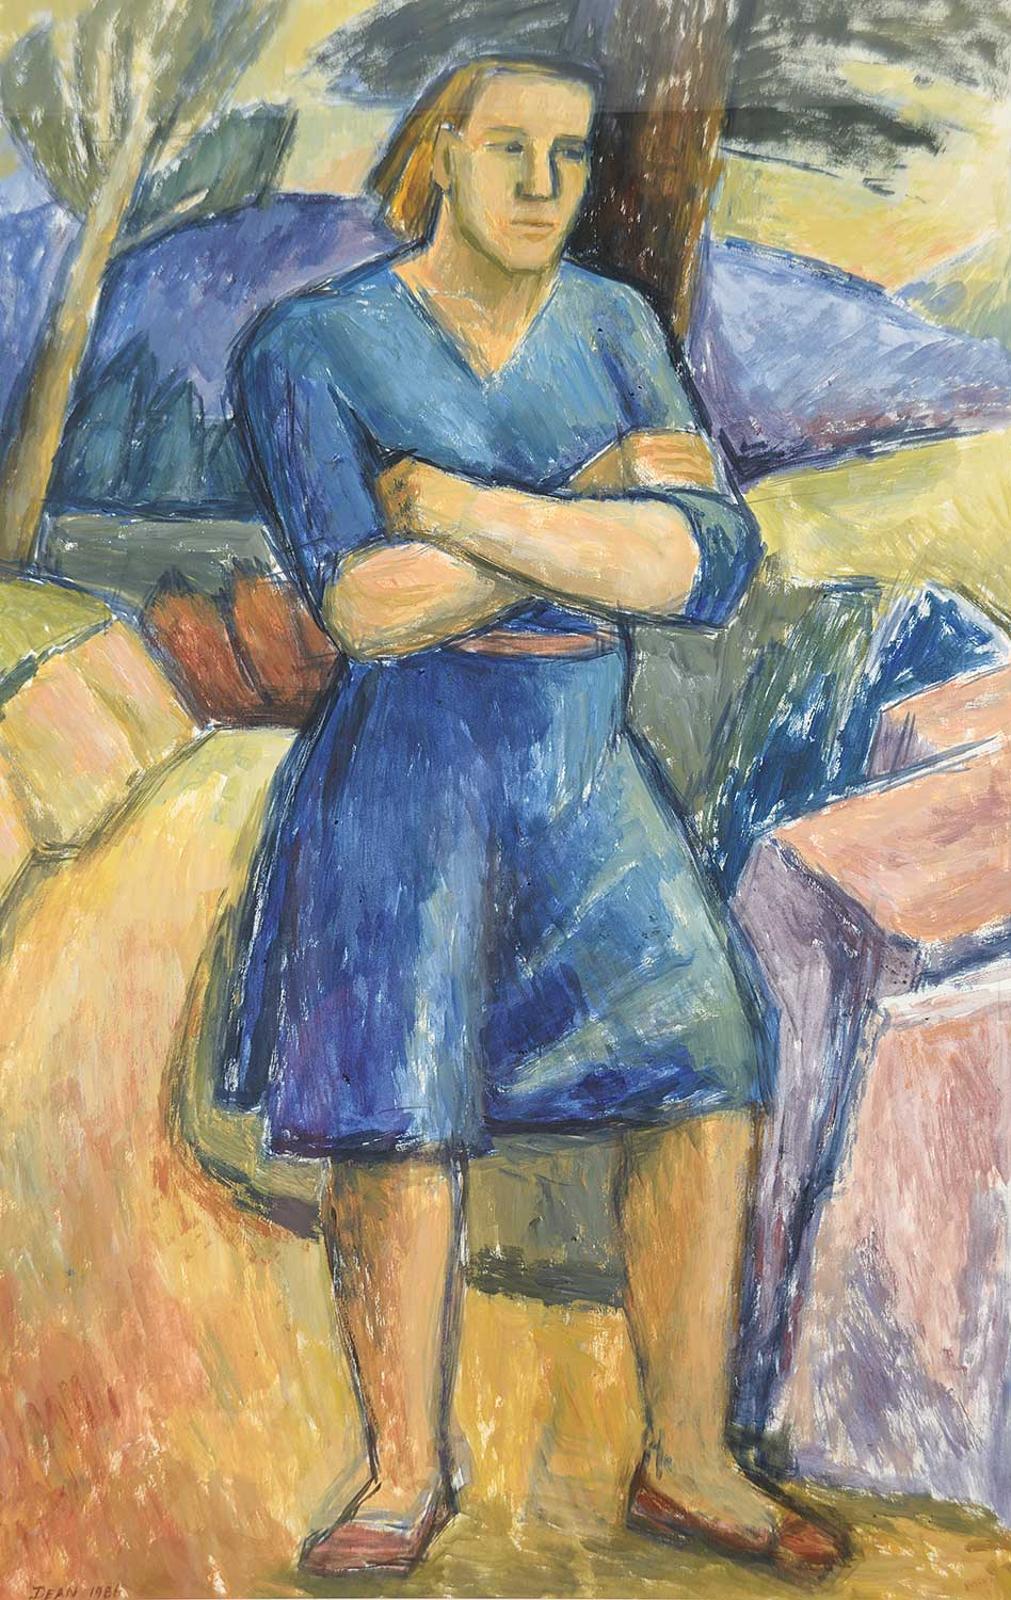 Diana Dean (1942) - Untitled - Portrait of Woman in Blue Dress